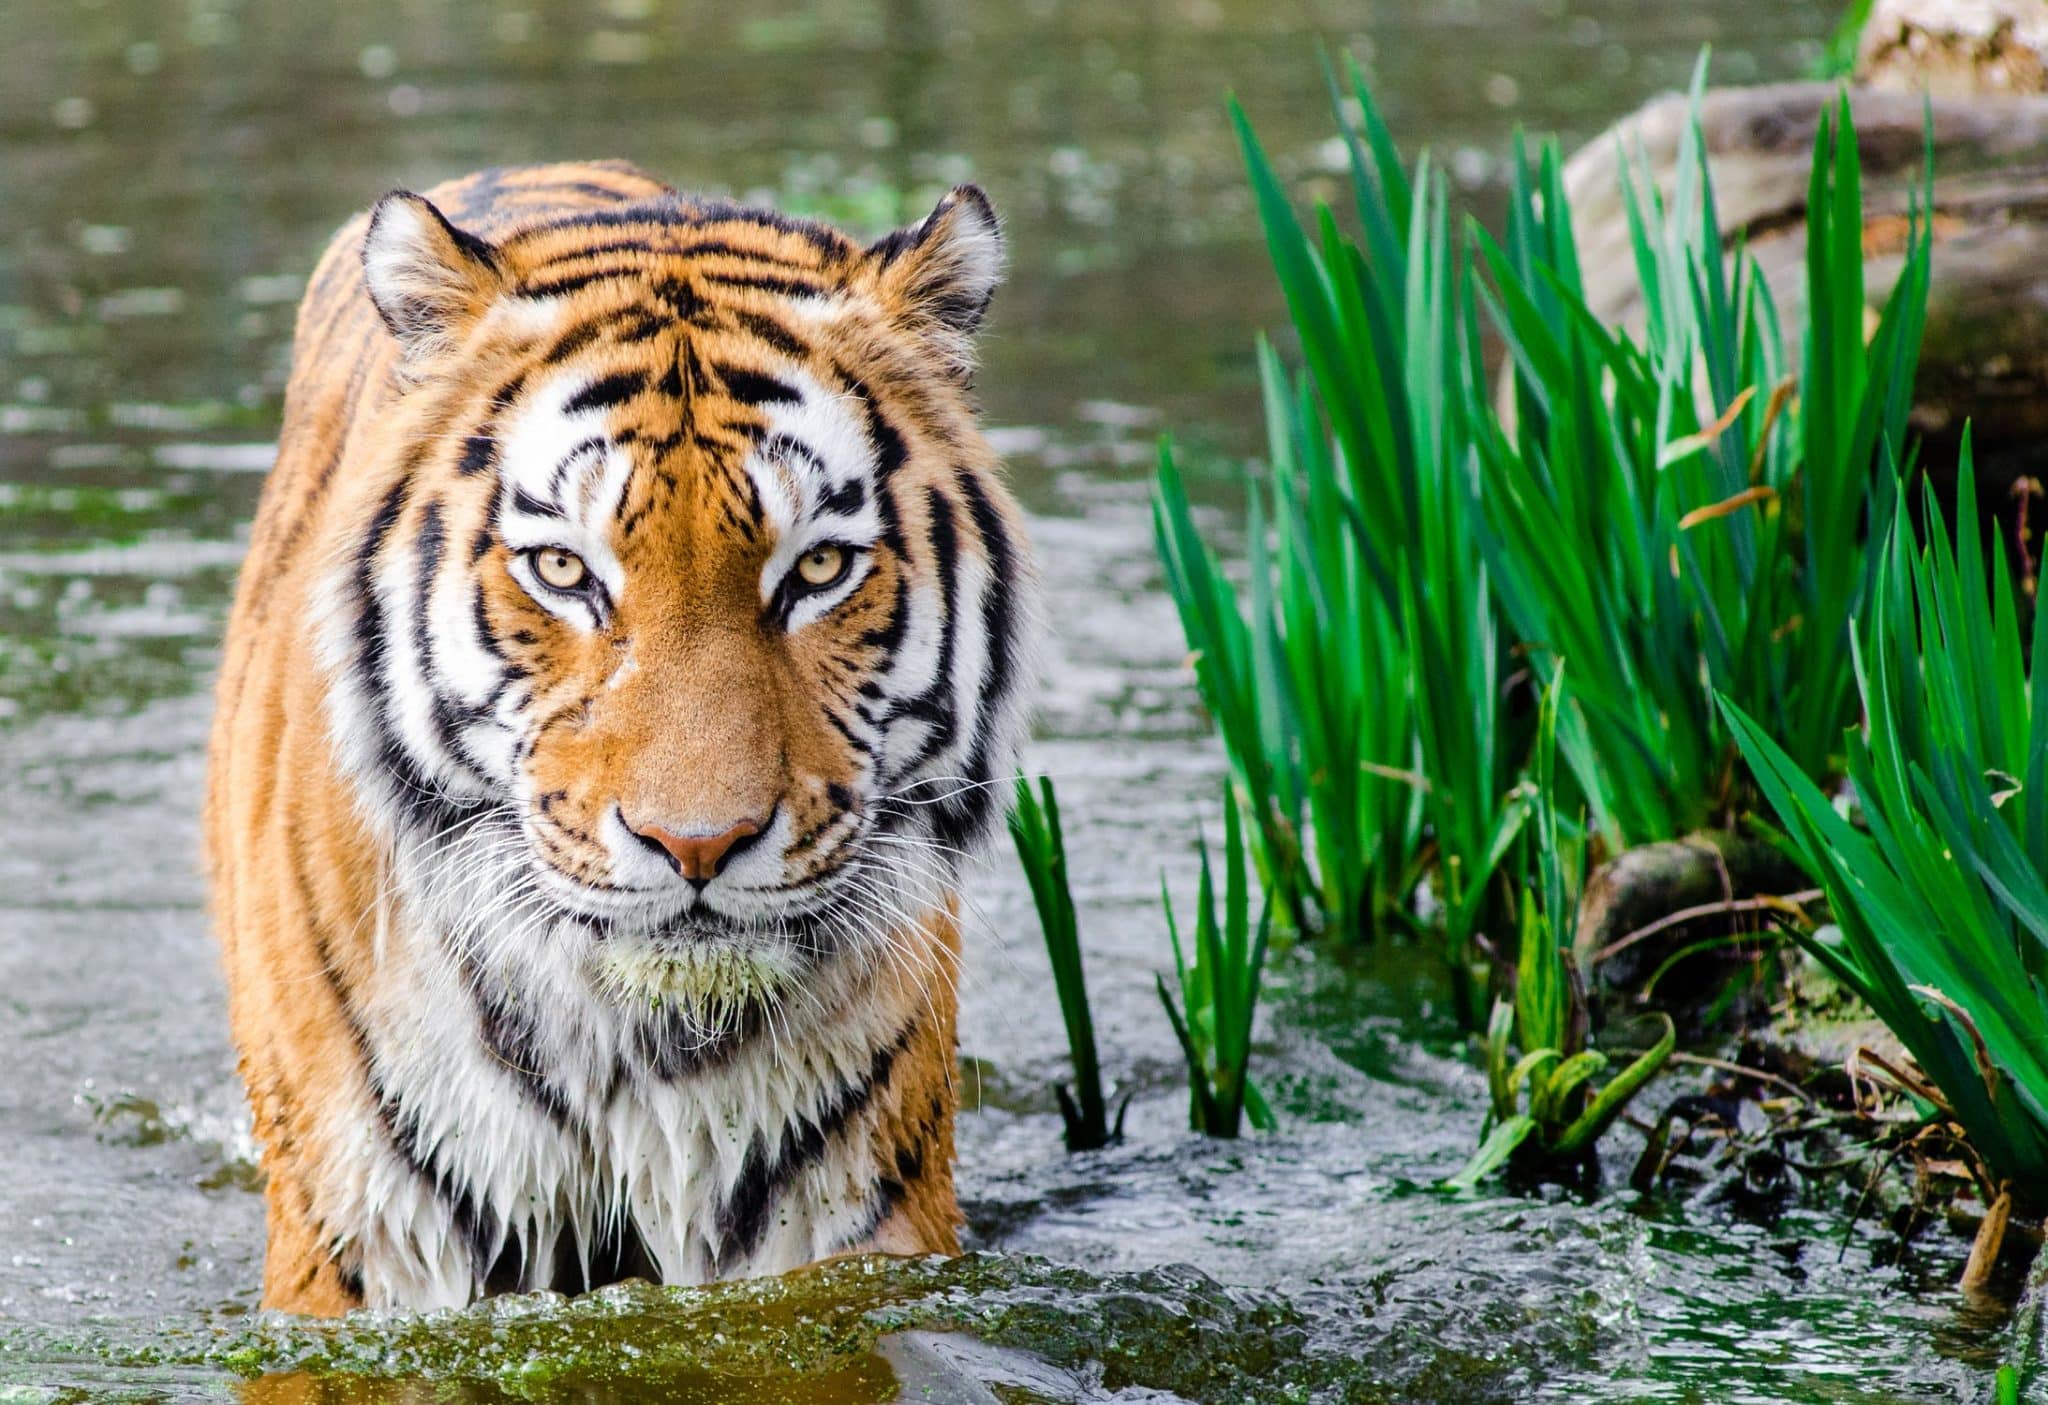 tiger attack safari park